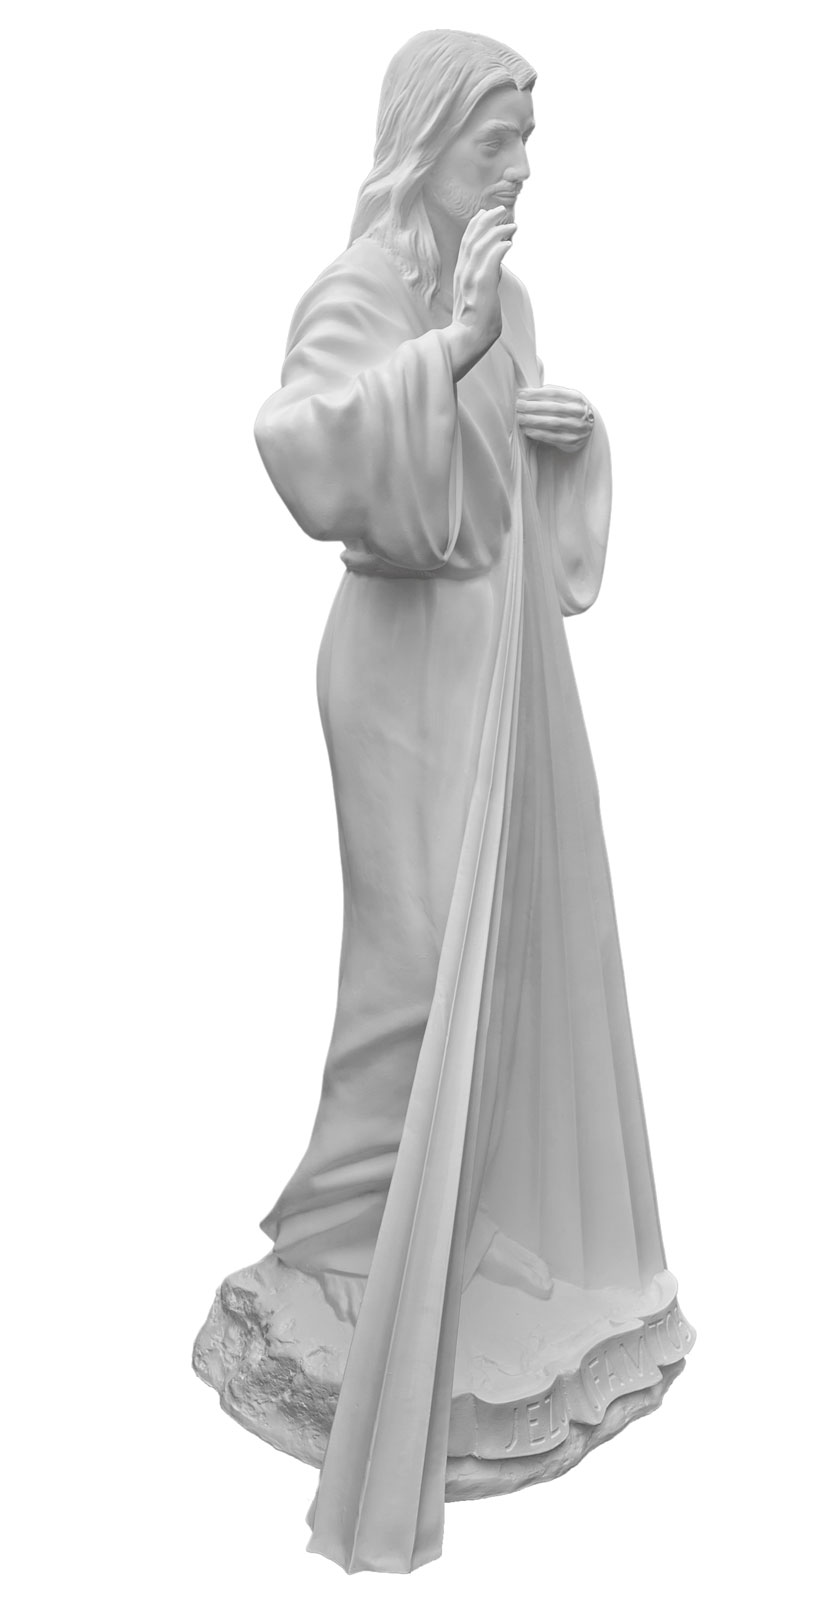 Jezus Miłosierny - Jezu Ufam Tobie - Figura nagrobkowa - 174 cm - R 172